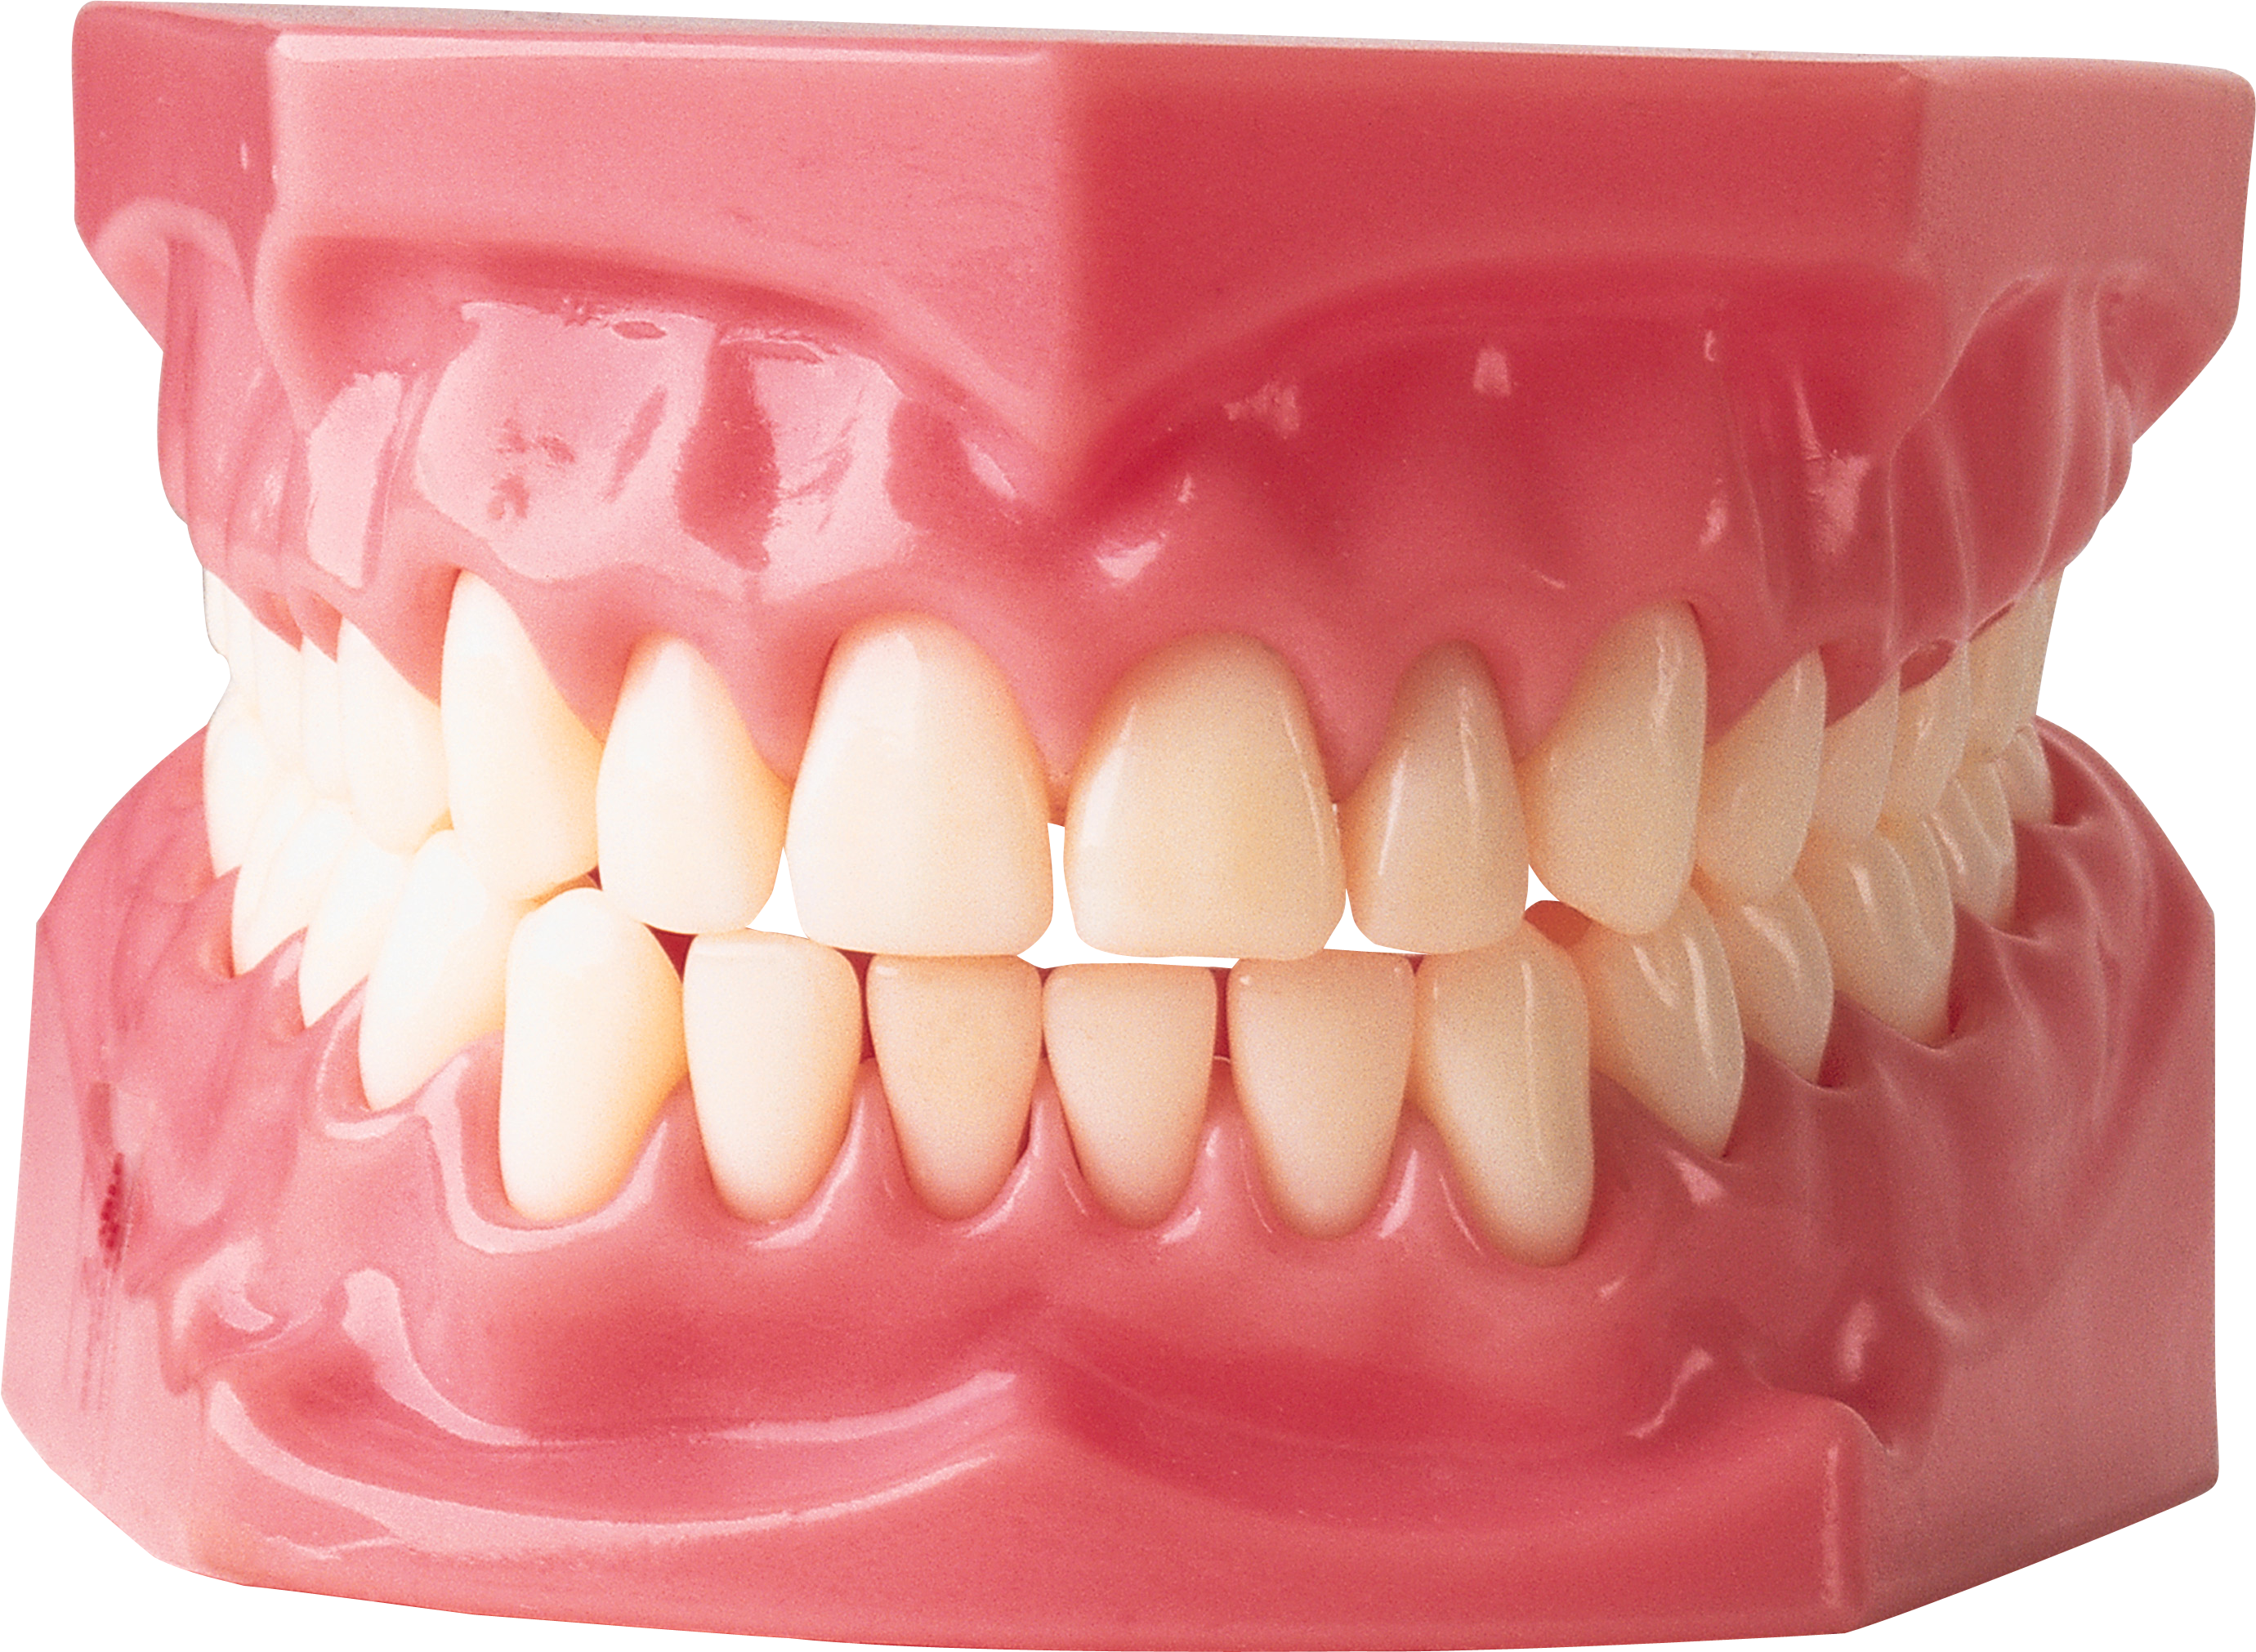 Imagen Transparente del diente blanco